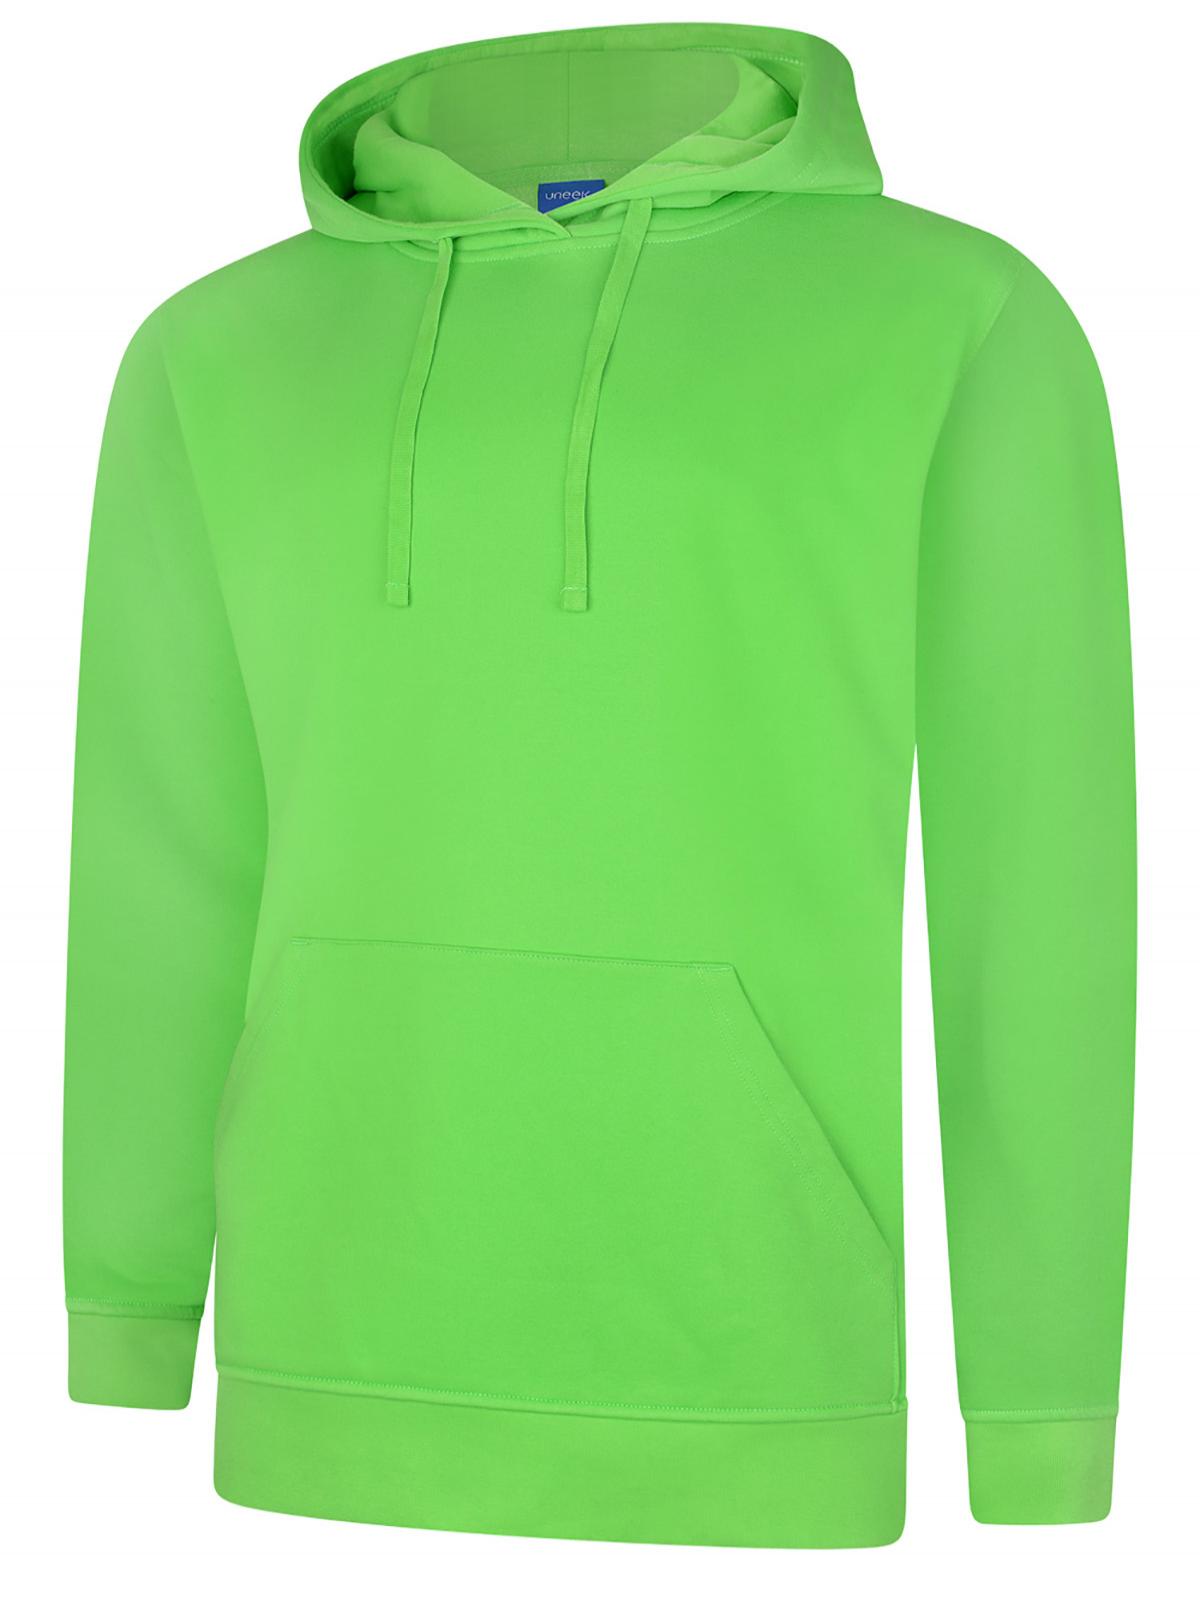 Uneek Deluxe Hooded Sweatshirt UC509 - Lime